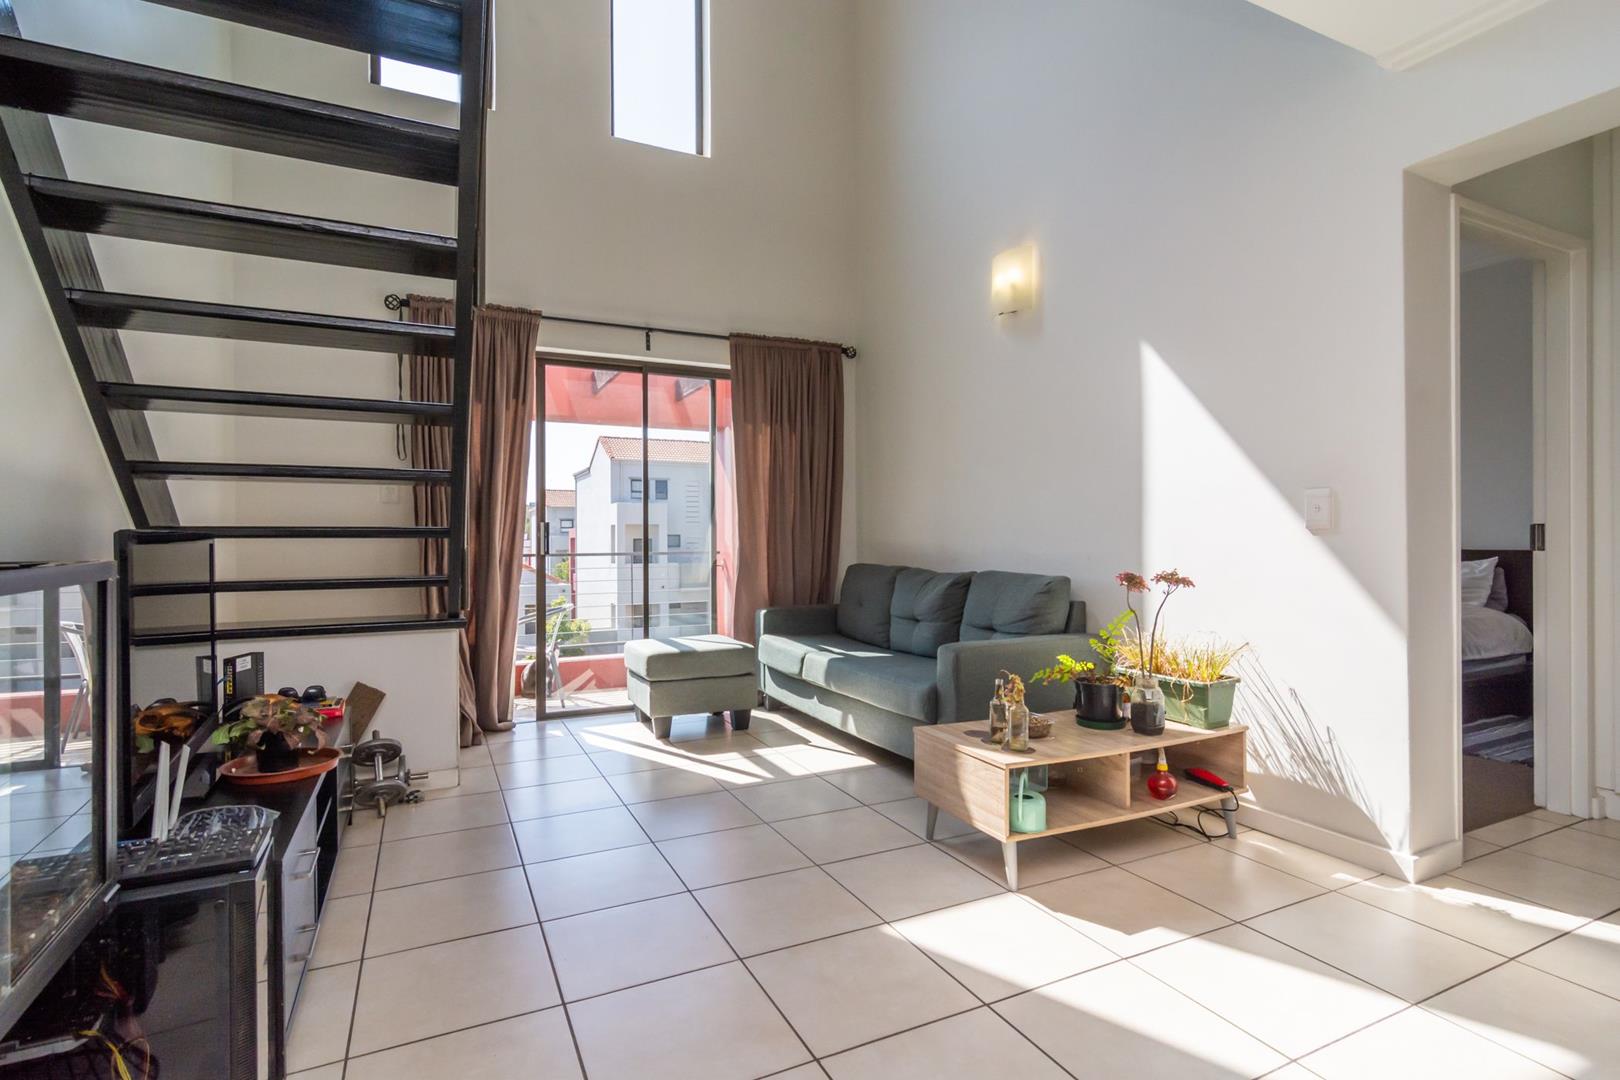 1 Bedroom Property for Sale in Witkoppen Gauteng